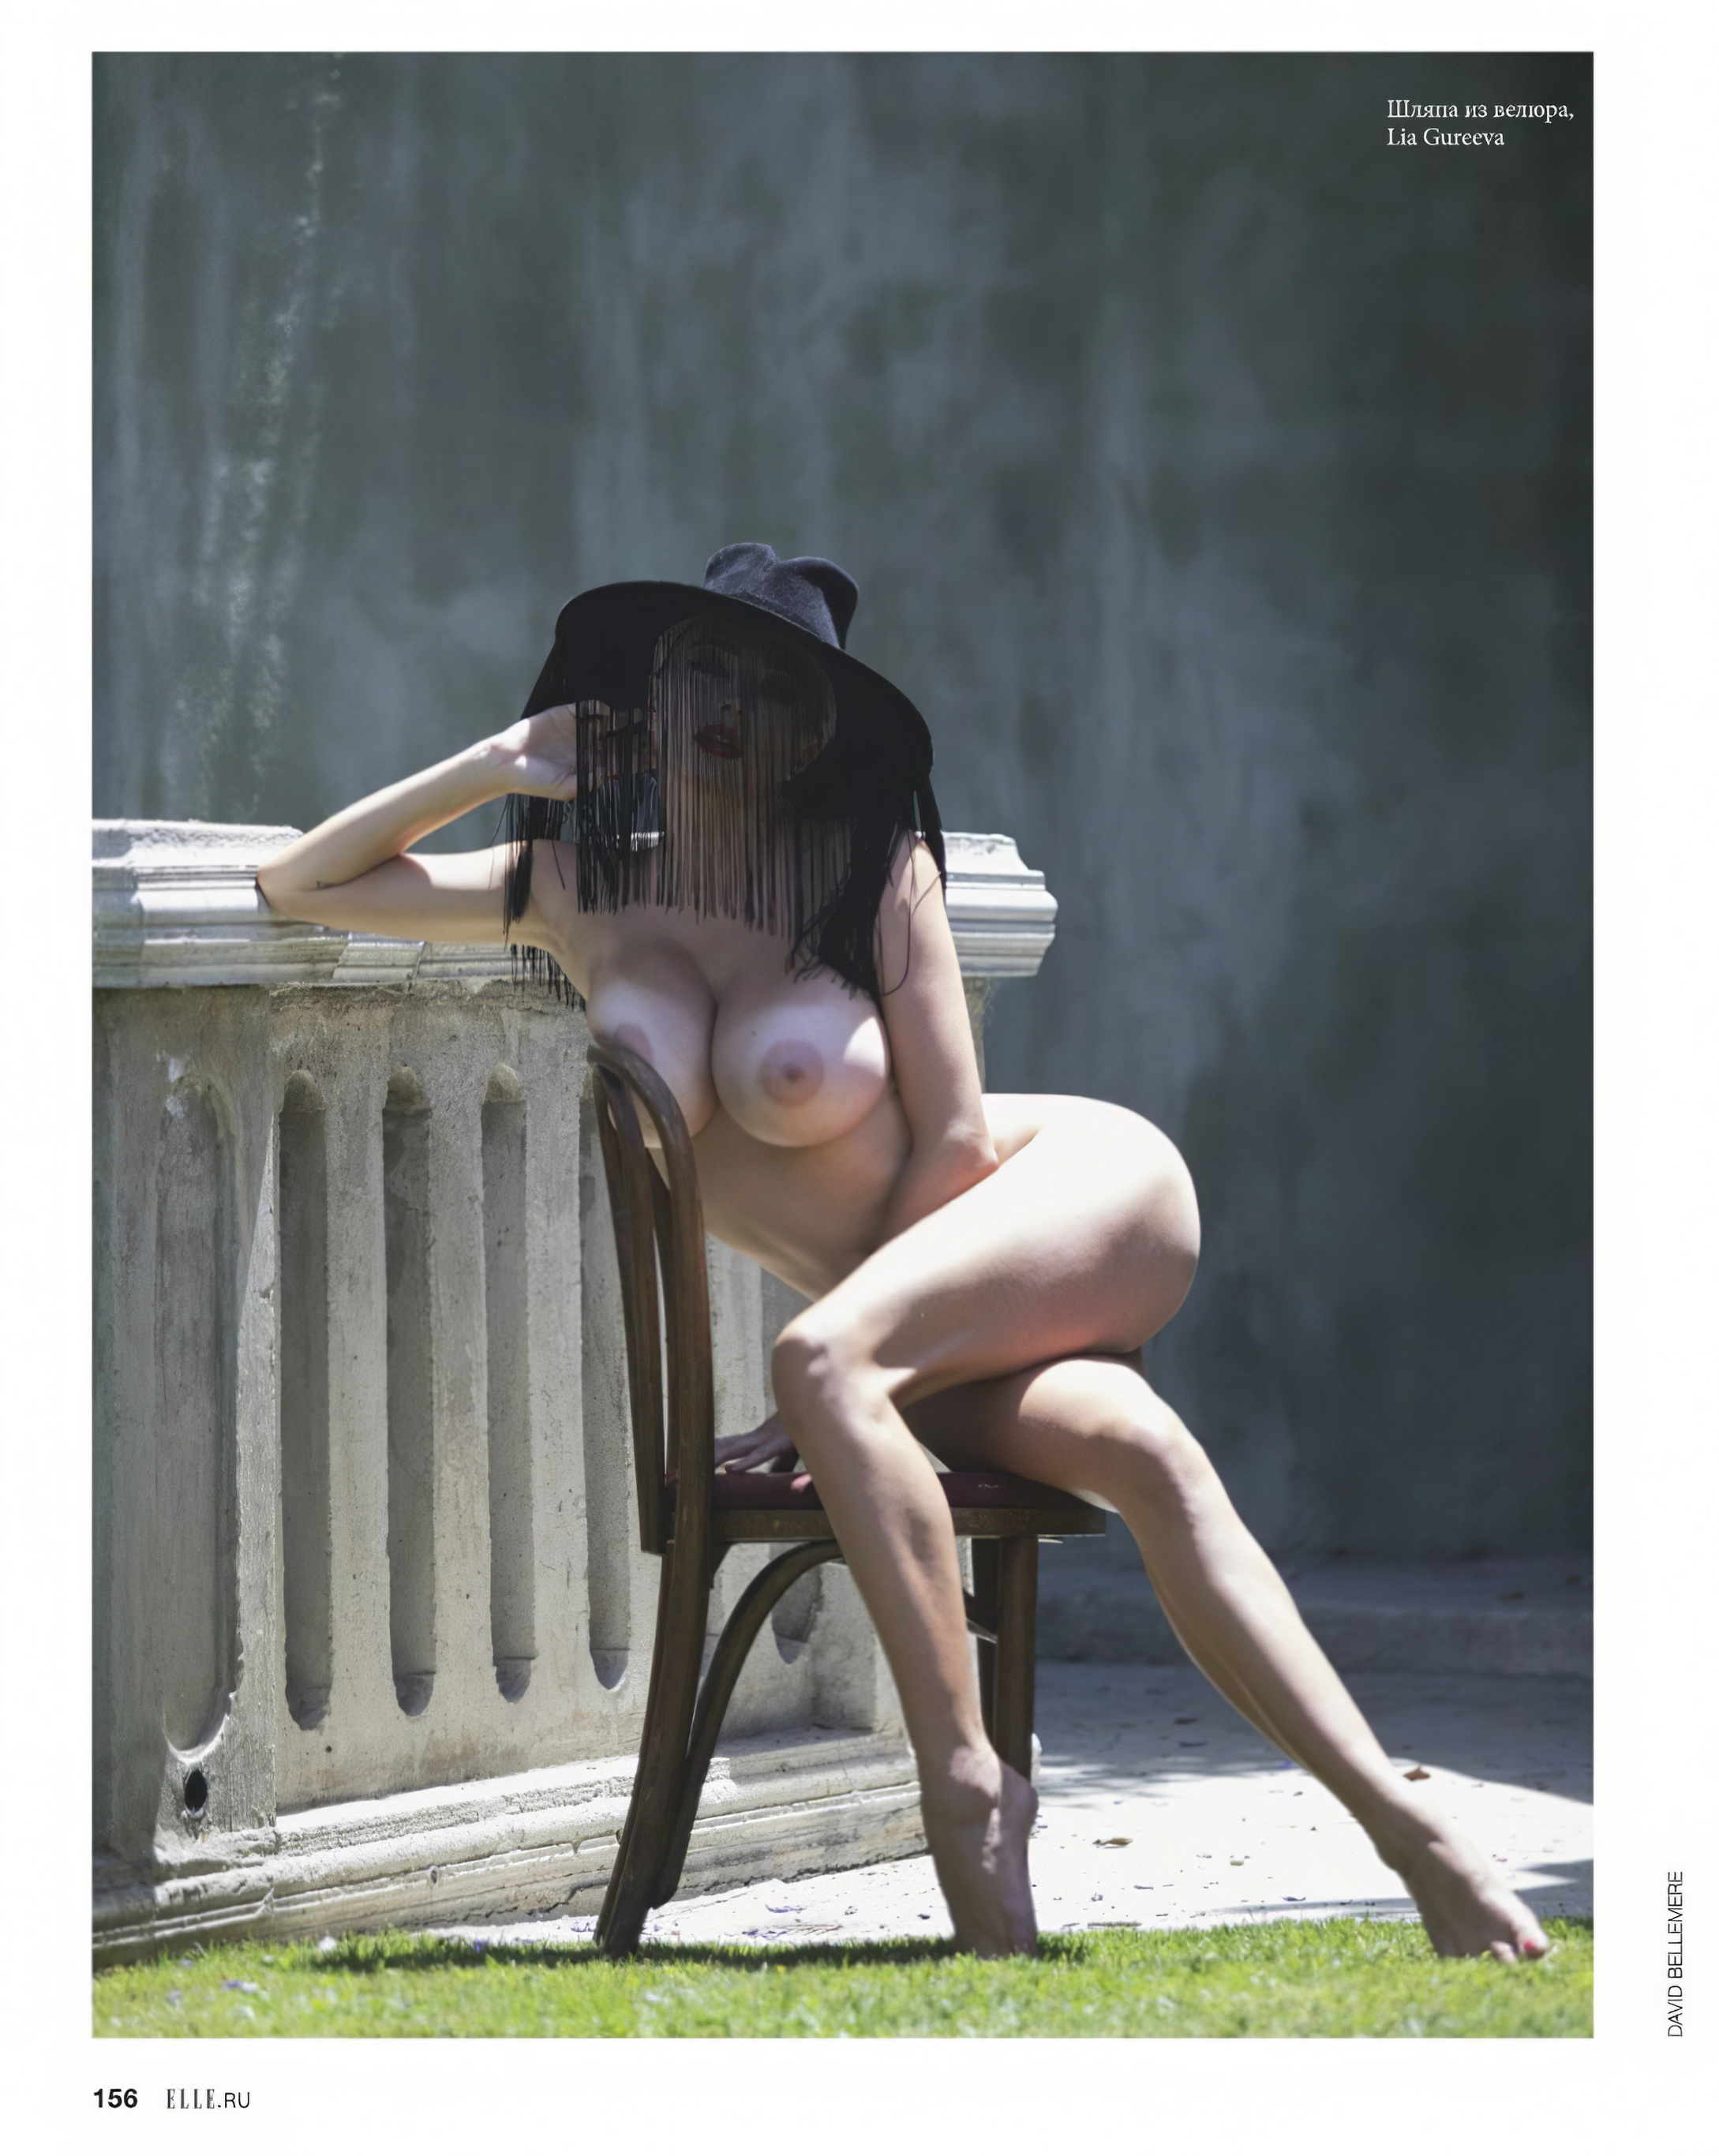 Caroline Vreeland naked for ELLE Russia November 2019 Issue 18x UHQ (16).jpg